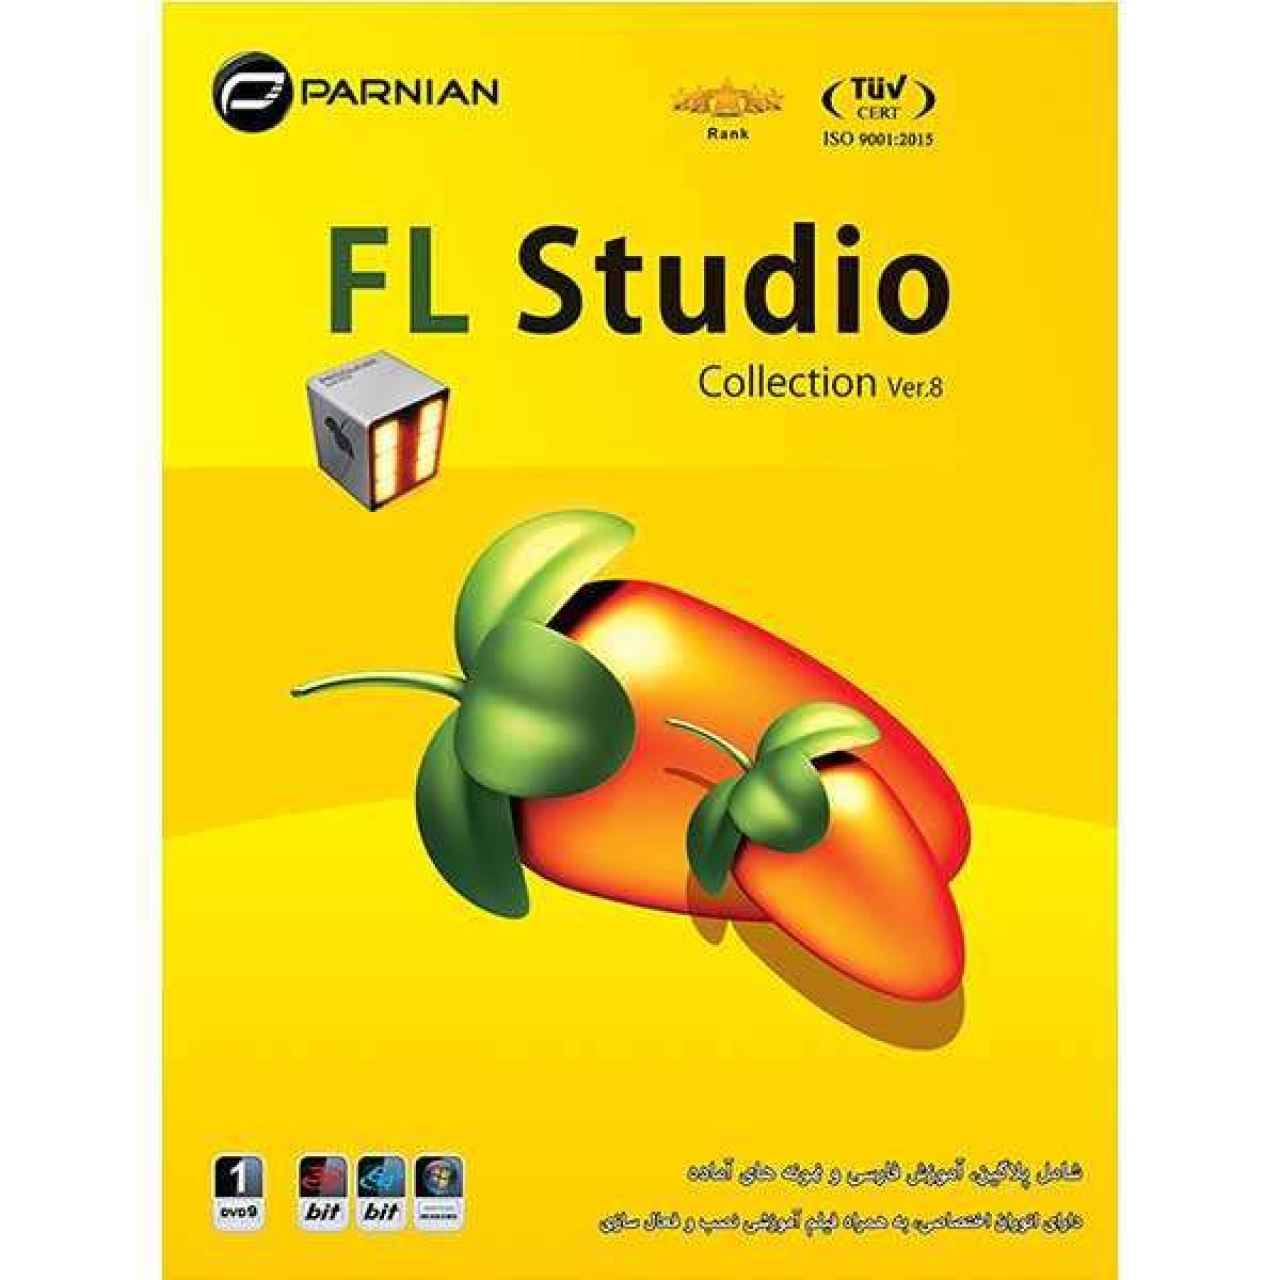 مجموعه نرم افزاری FL Studio Collection نسخه Ver.8 نشر پرنیان